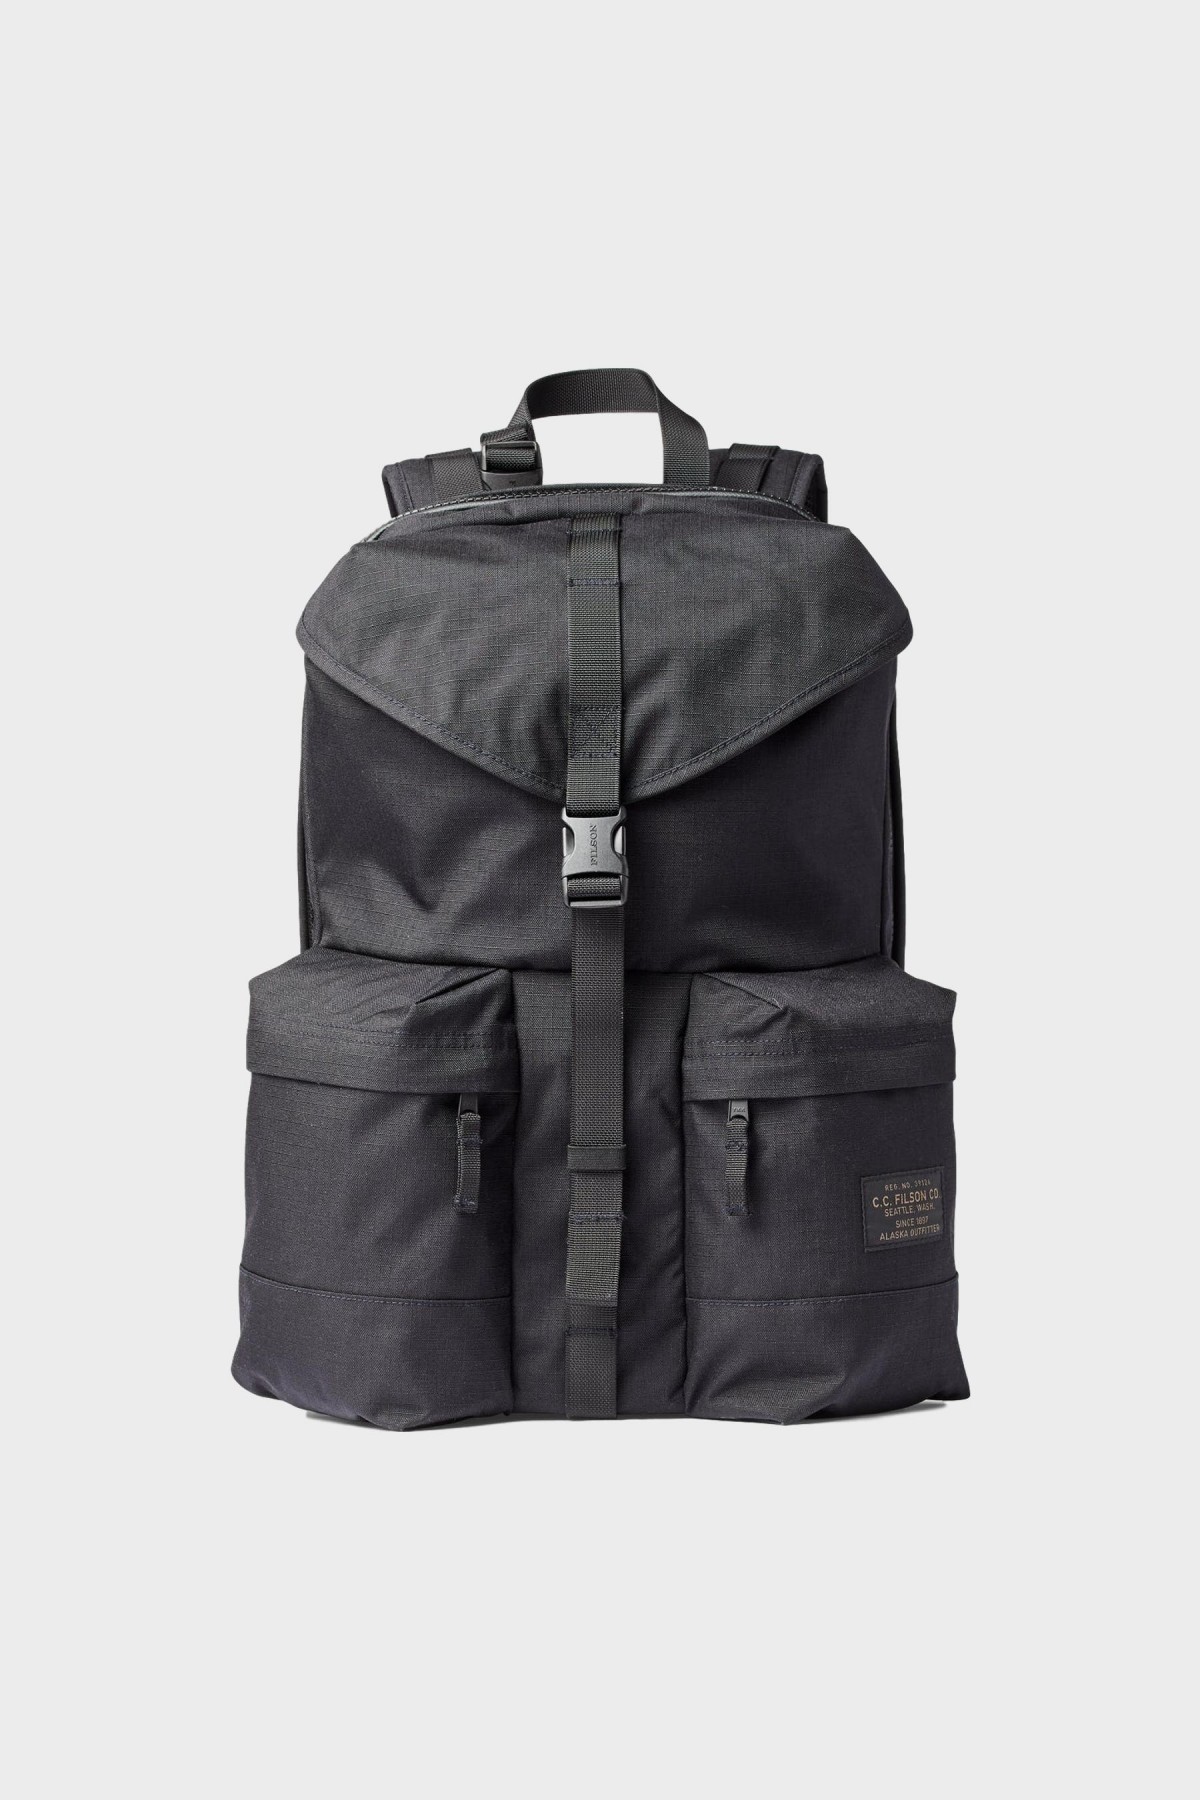 Filson Ripstop Nylon Backpack in Black